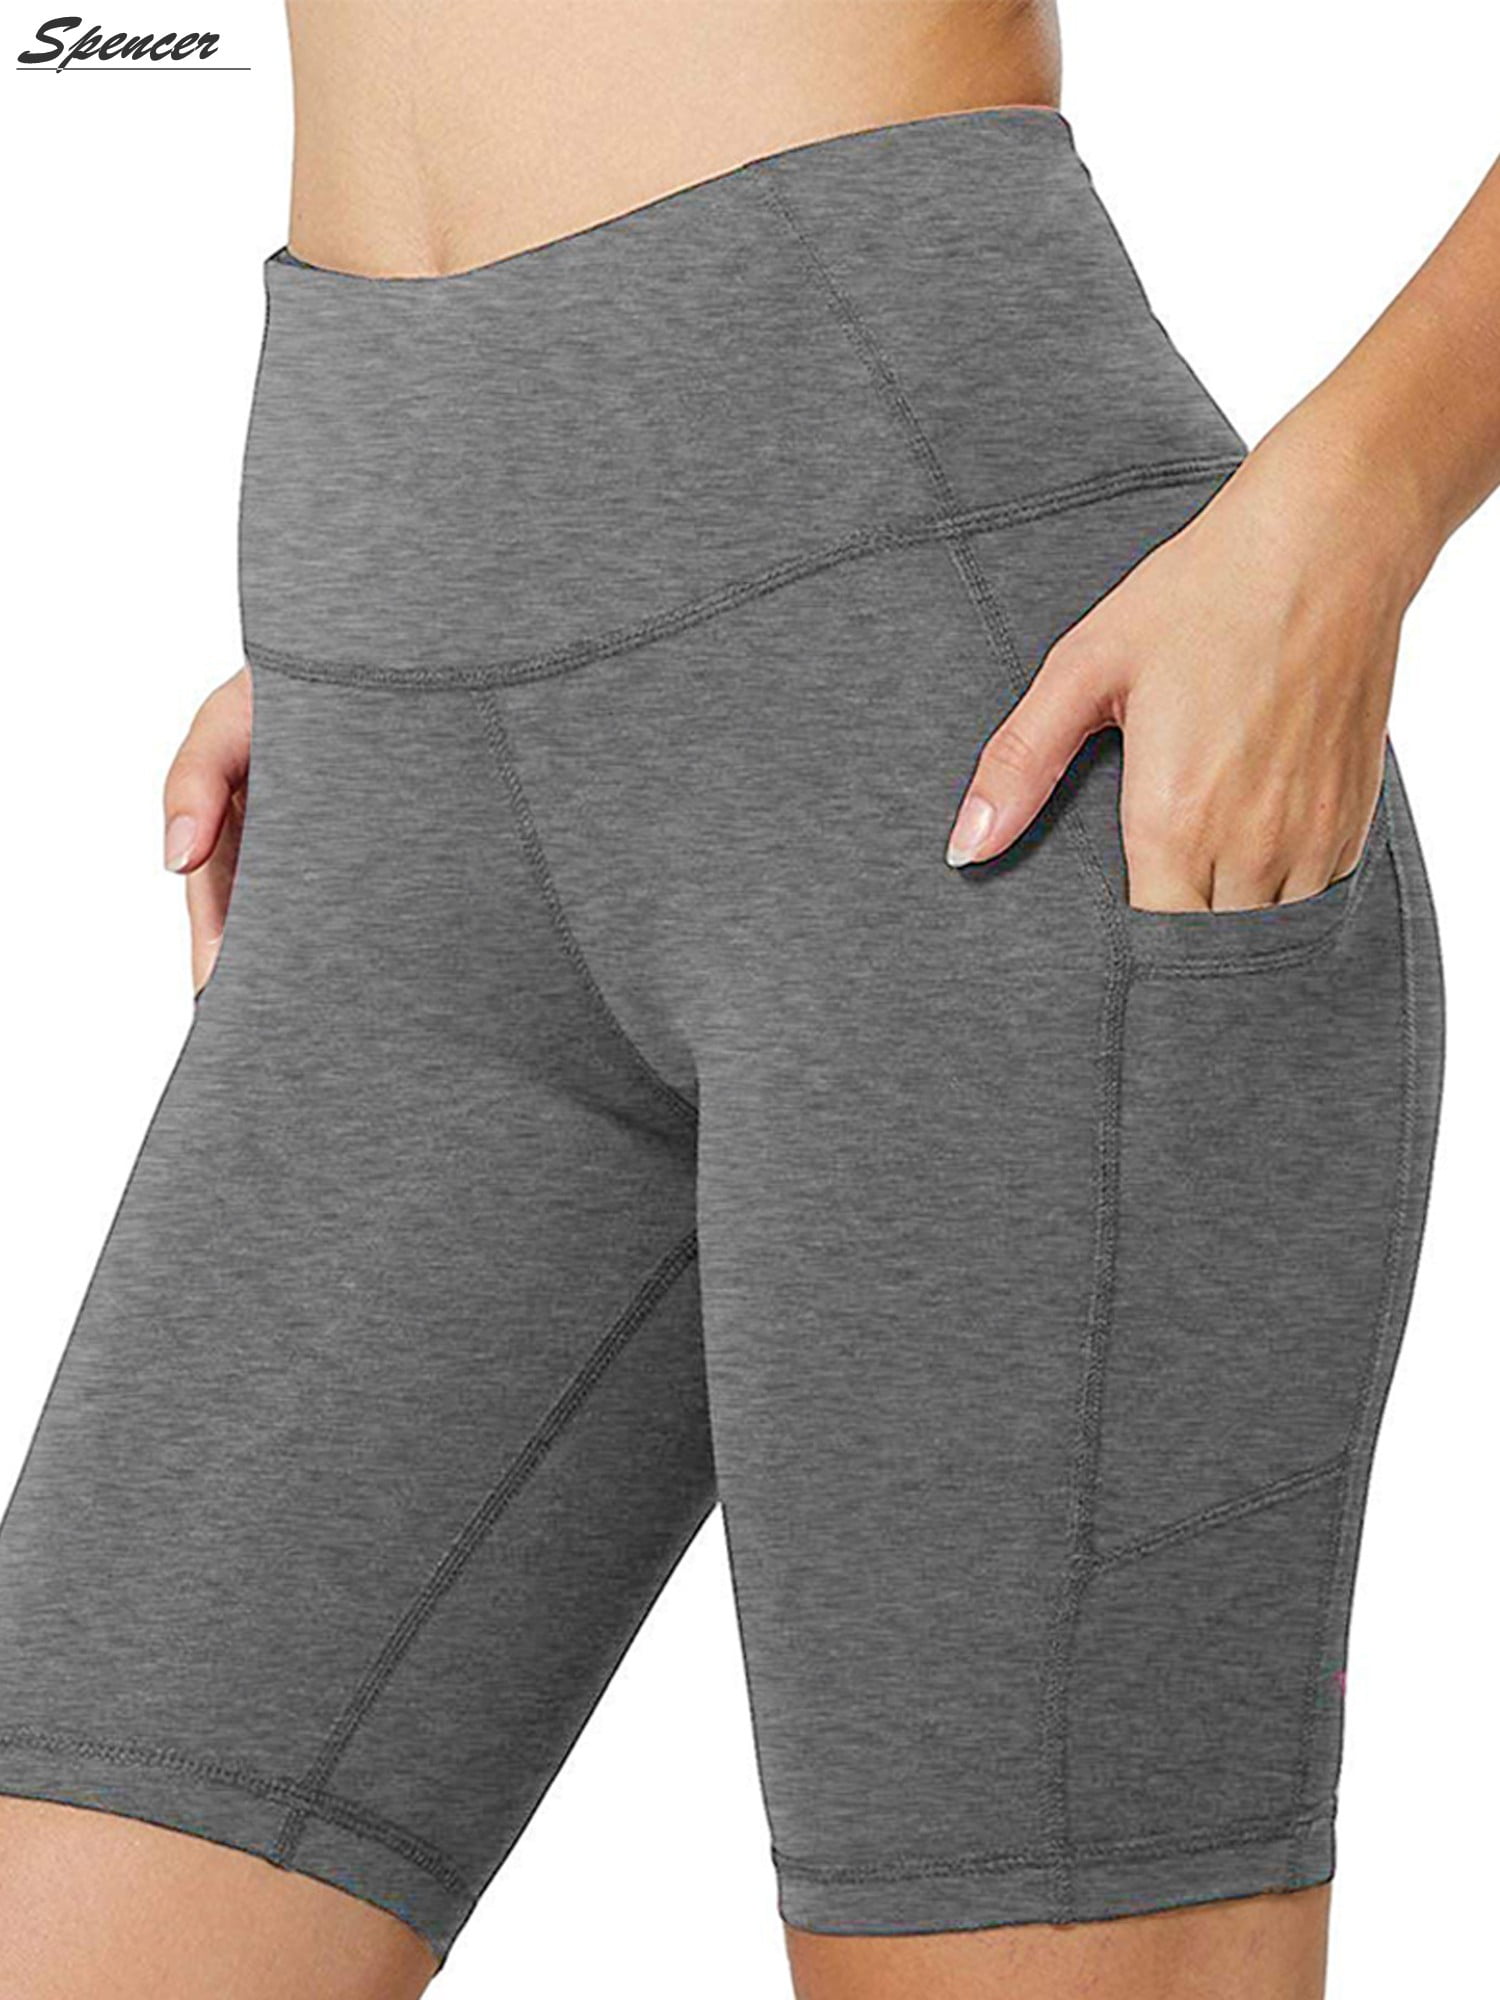 Yoyorule Summer Clothes&Pants Women High Waist Yoga Pants Side Cell Phone Pockets Sports Shorts Leggings Pants